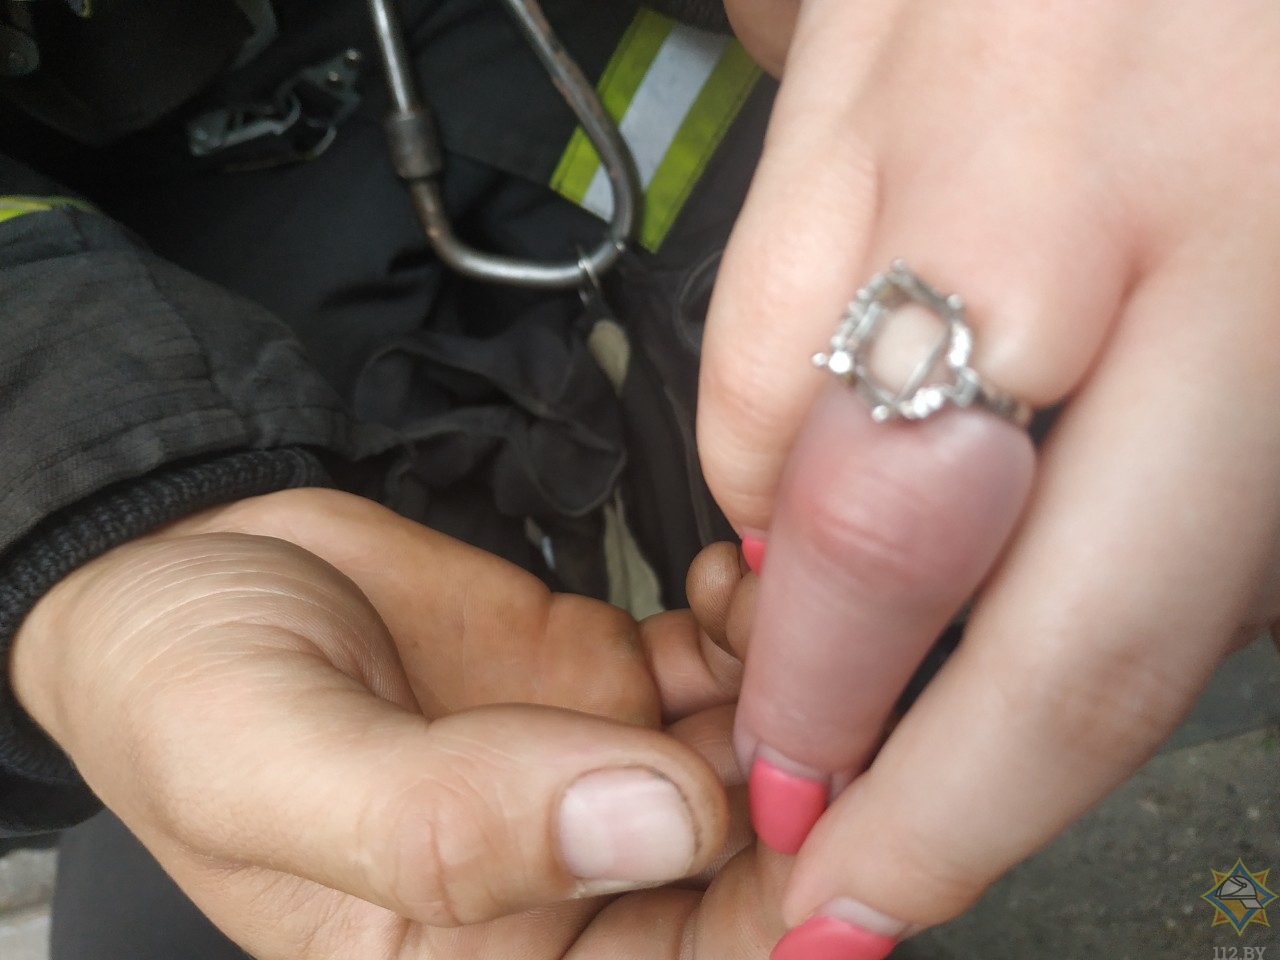 фото ивлеевой где она показывает кольцо